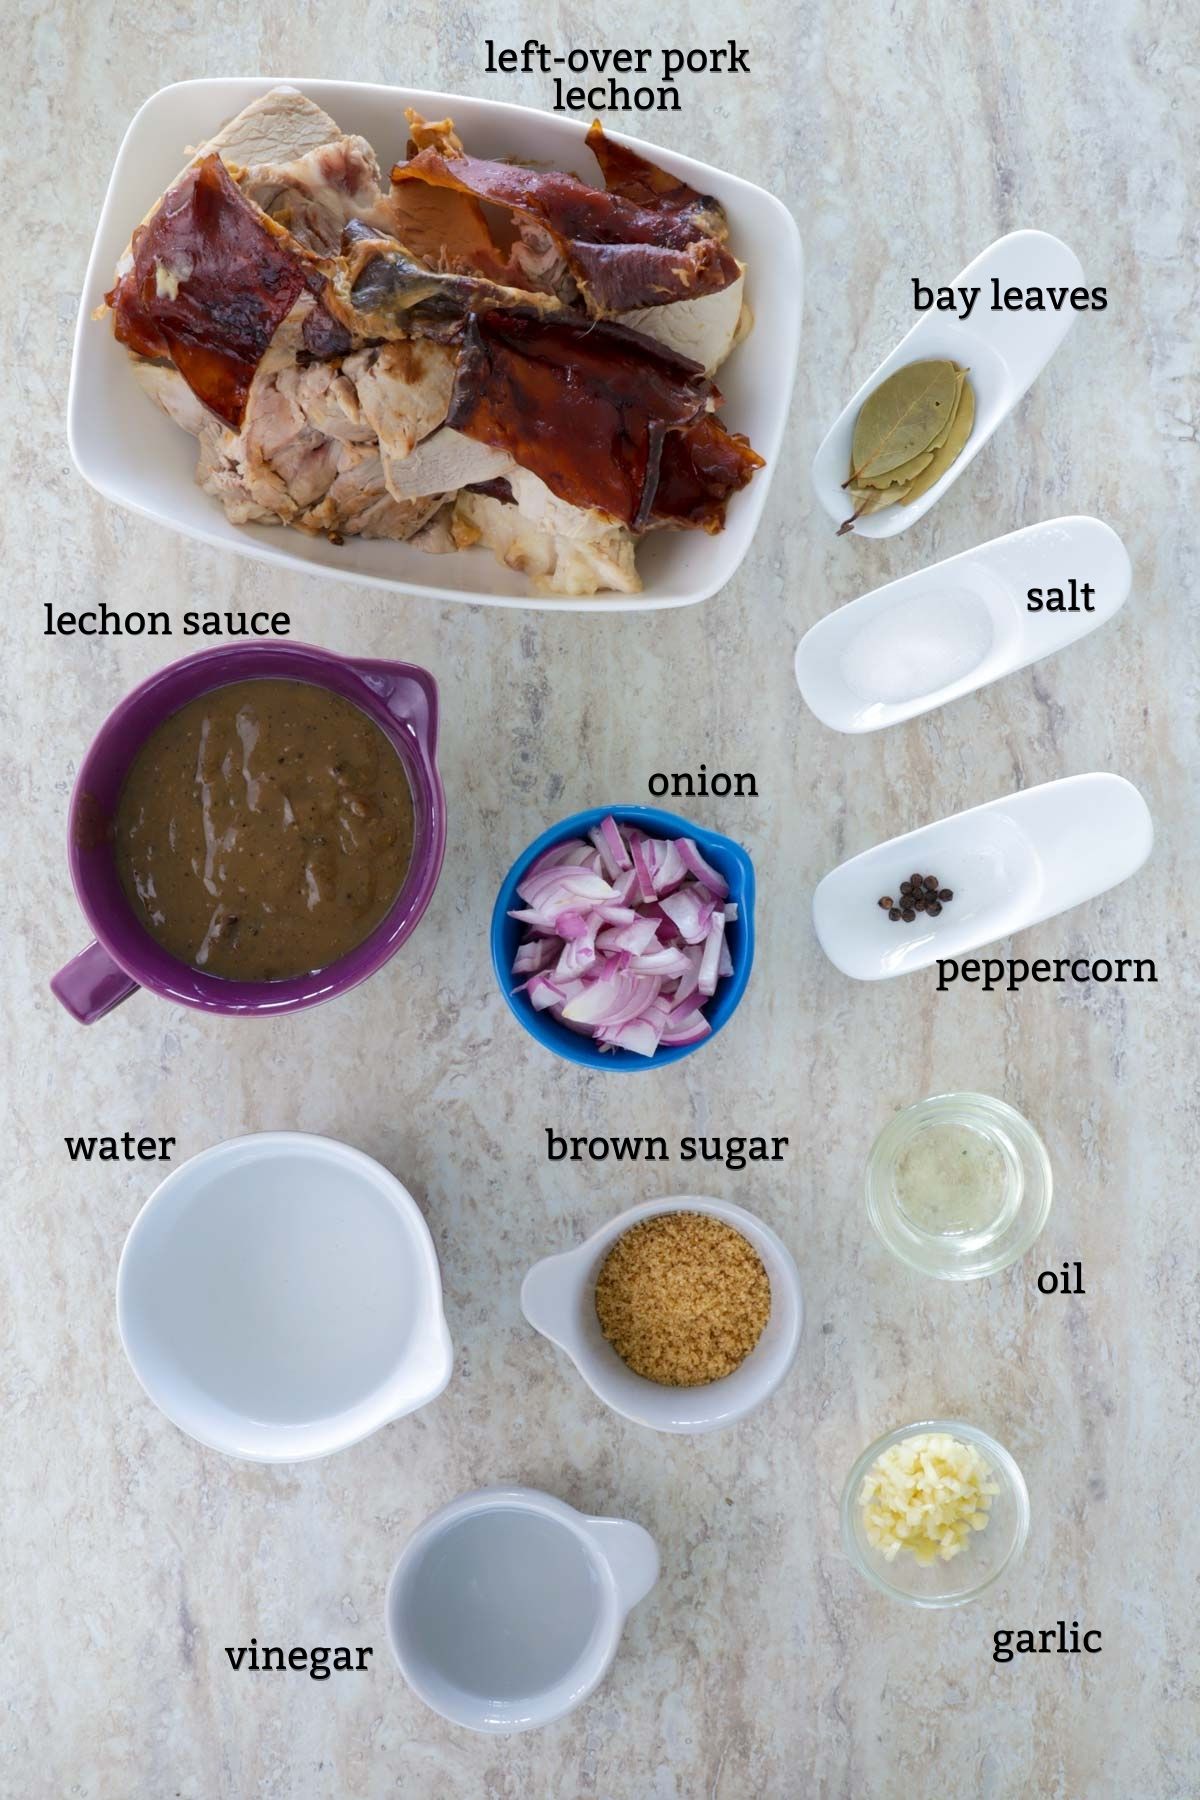 Lechon Paksiw Ingredients